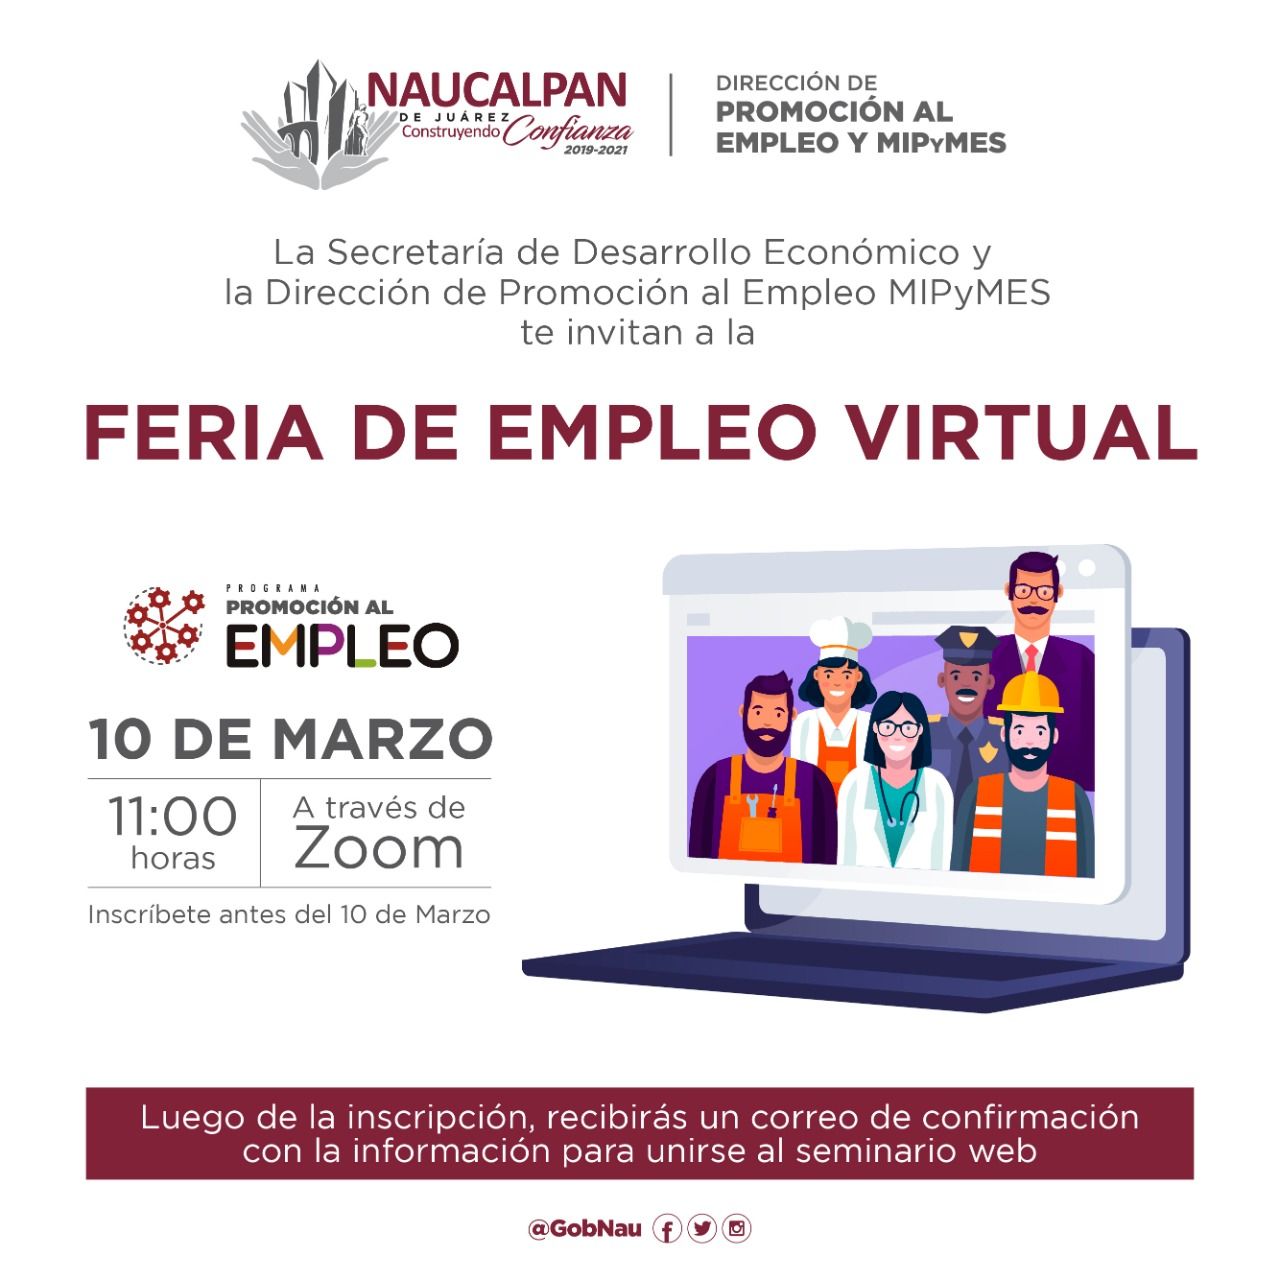 ¿Buscas trabajo? Haz tu registro para la Feria del Empleo Virtual en Naucalpan